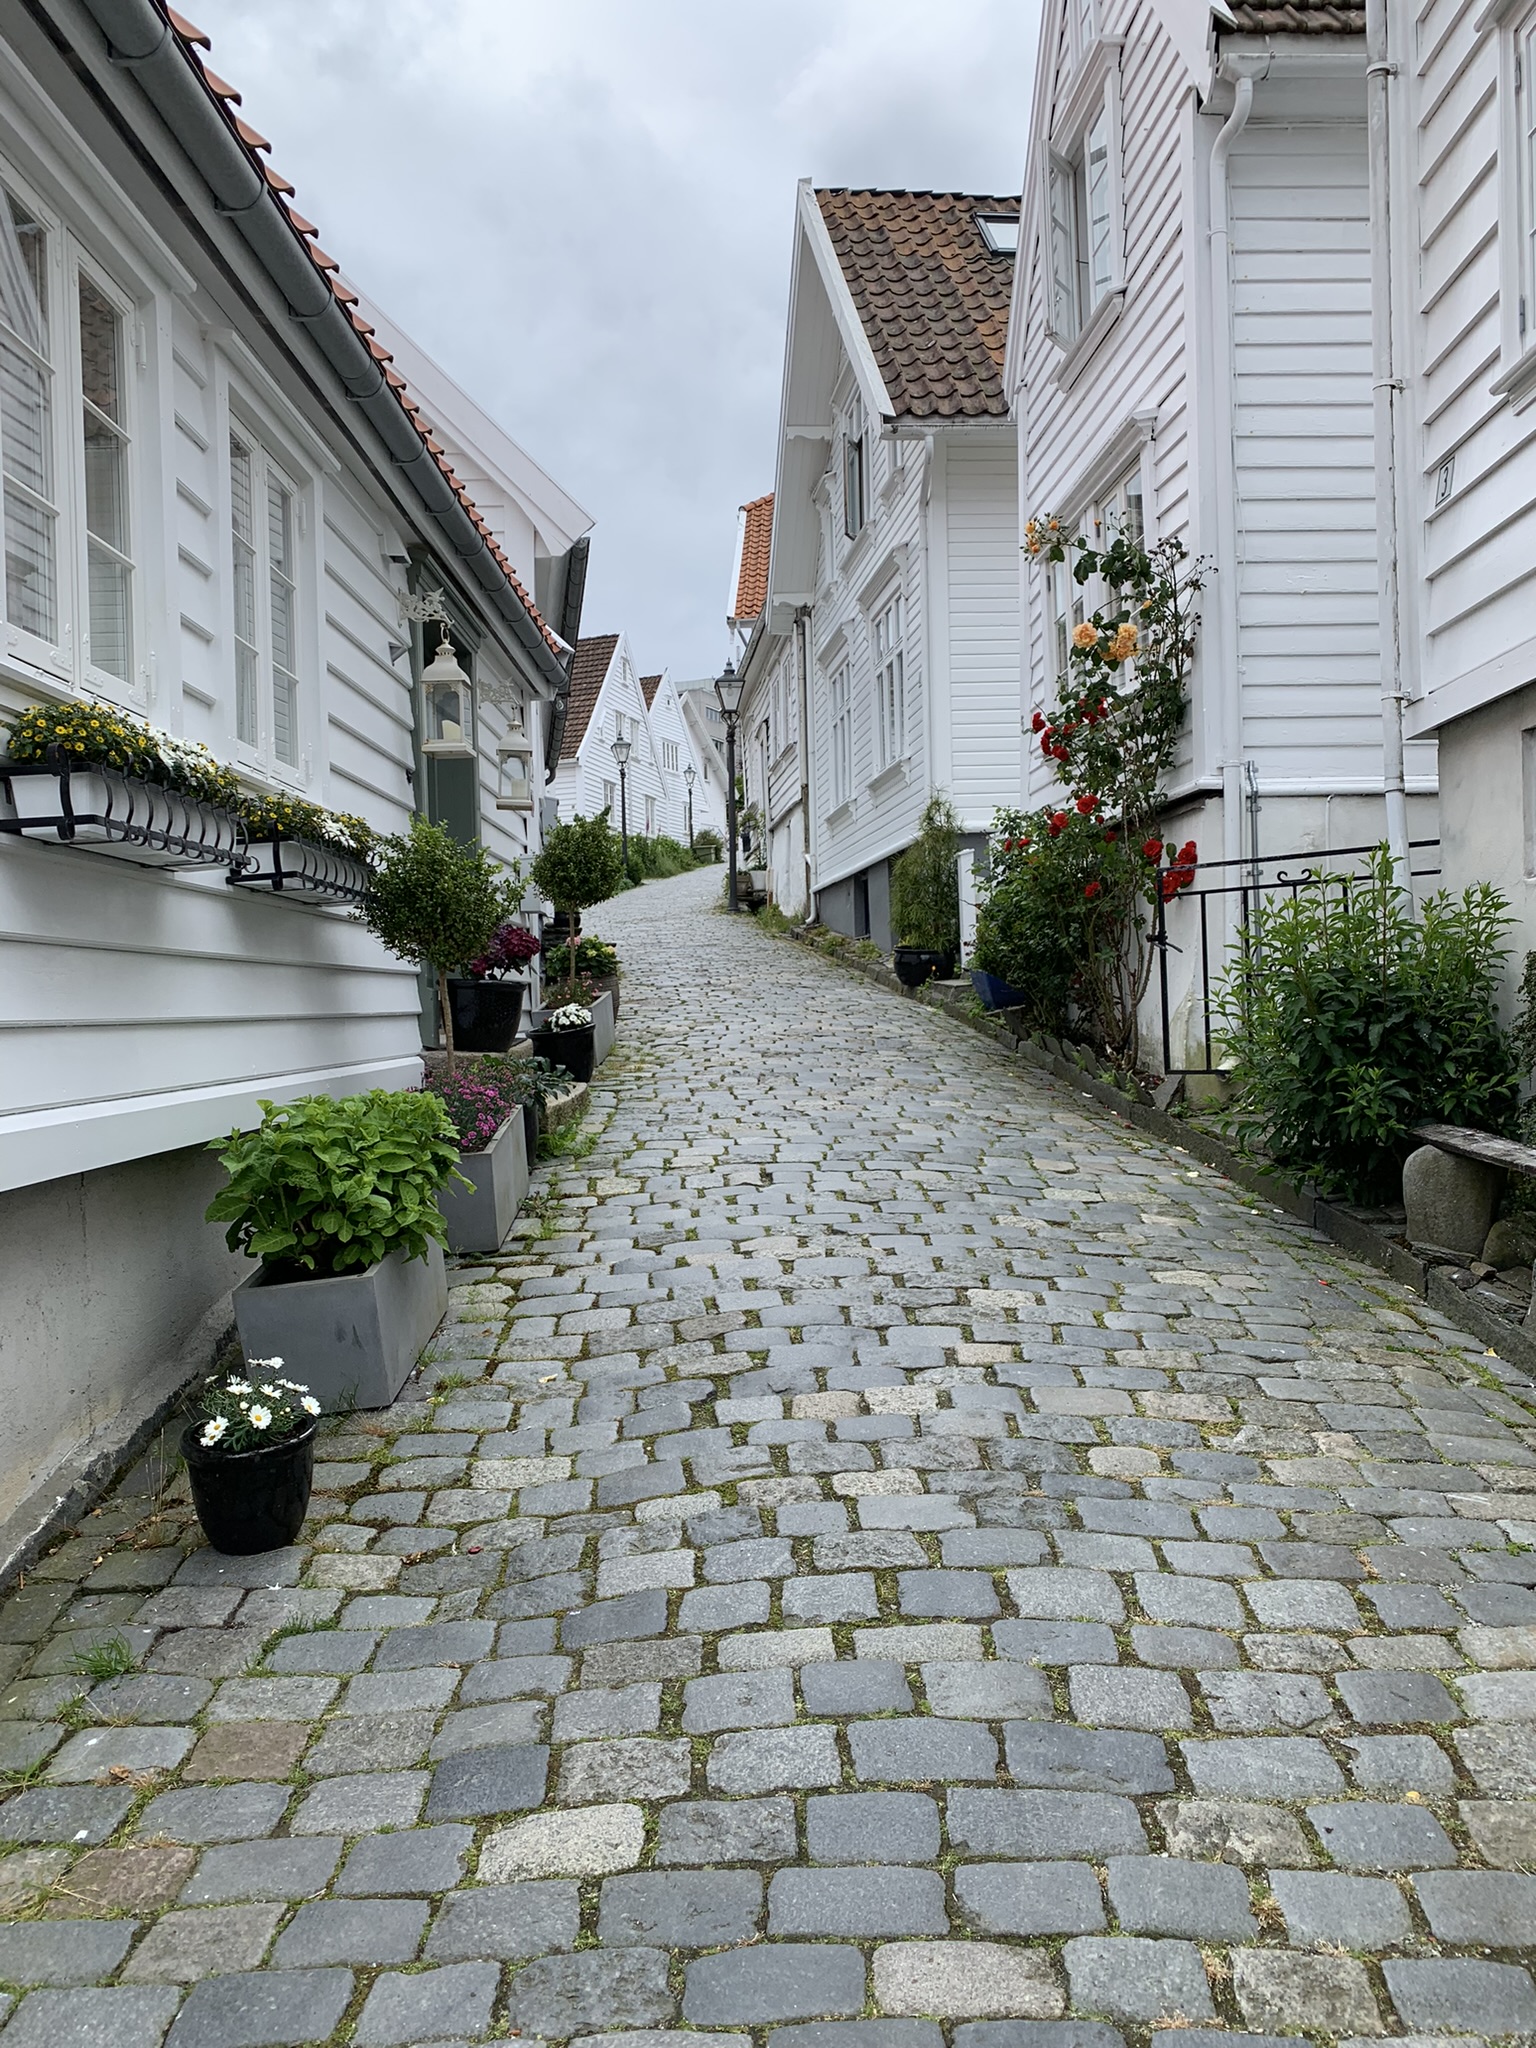 Noorwegen Gamle Stavanger straatje